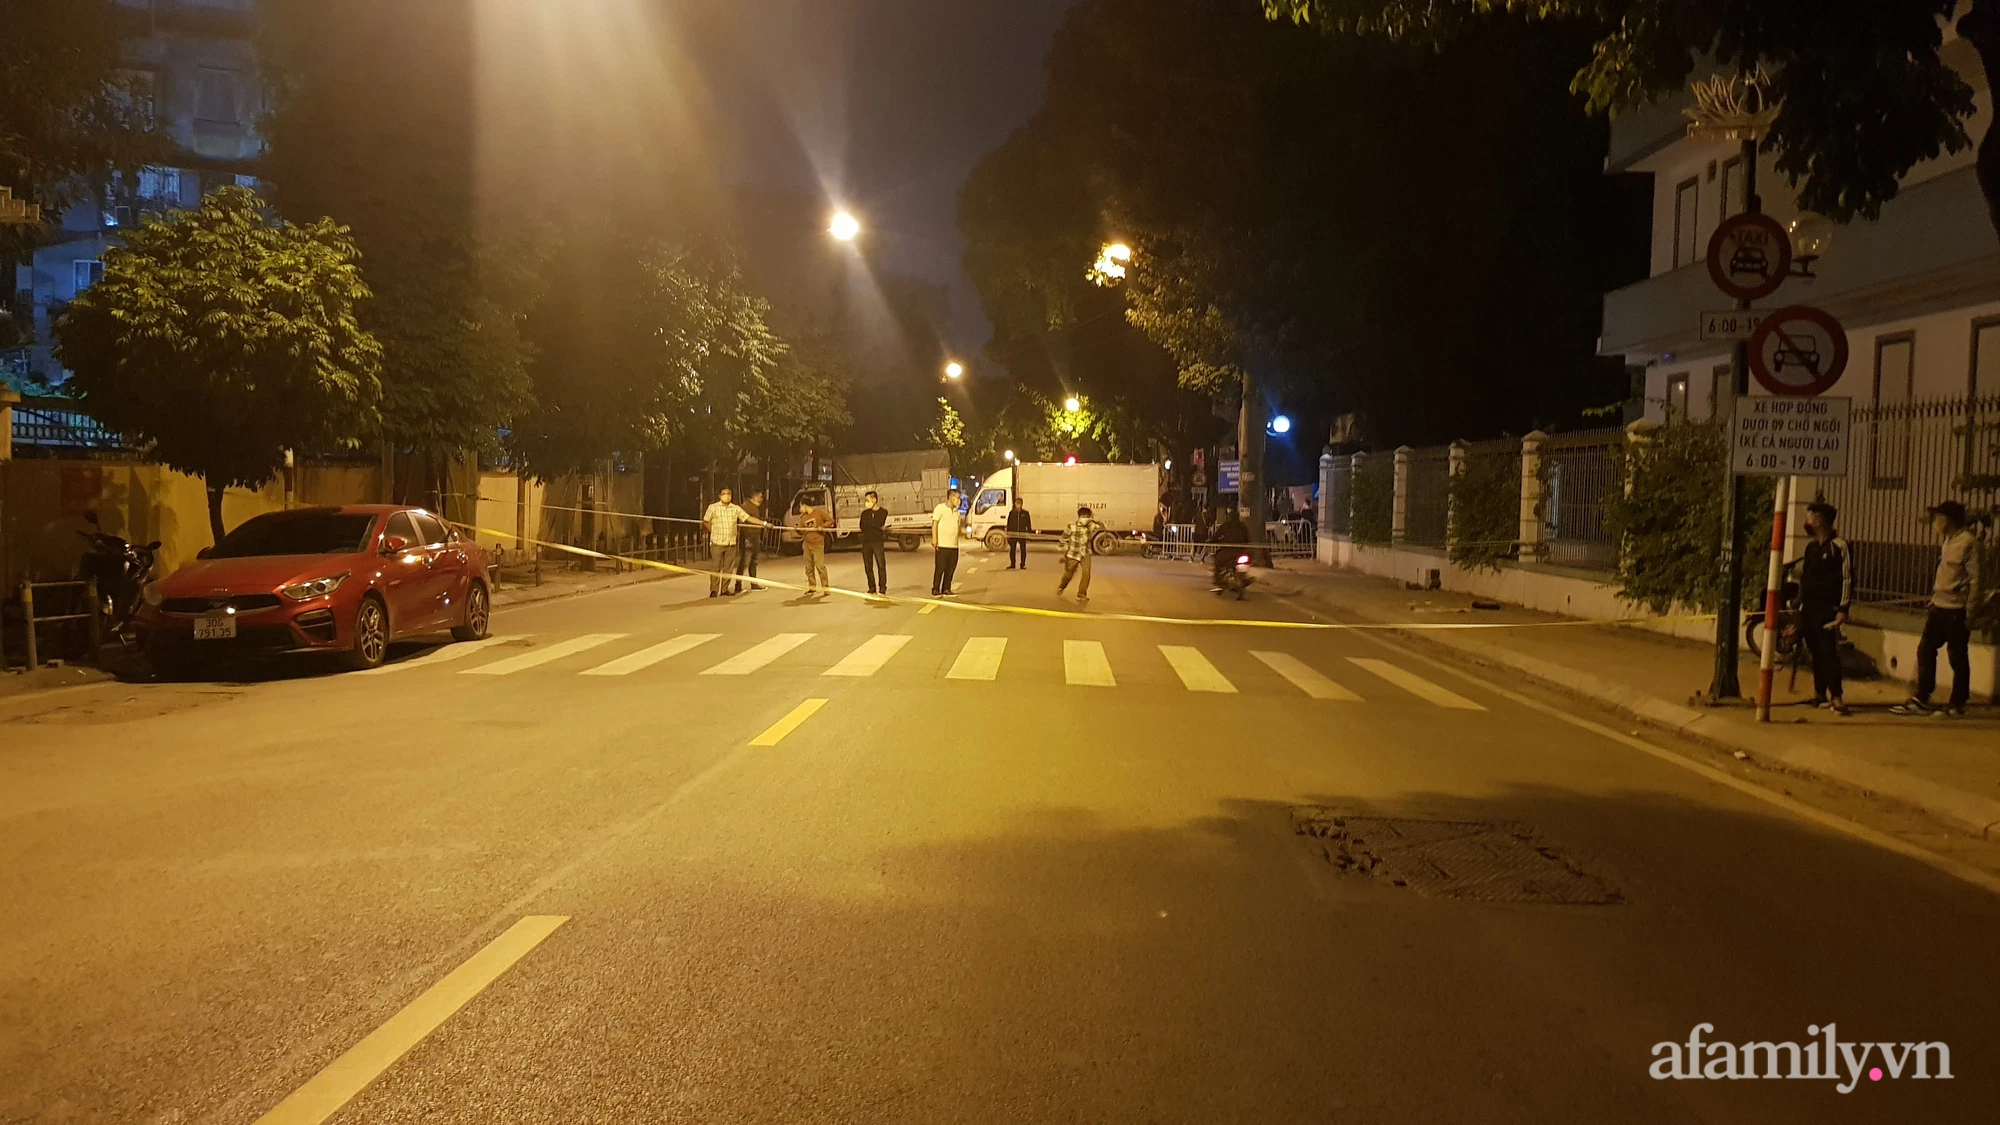 Hà Nội: Vây bắt hơn 40 thanh thiếu niên đua xe náo loạn đường phố trong đêm - Ảnh 1.